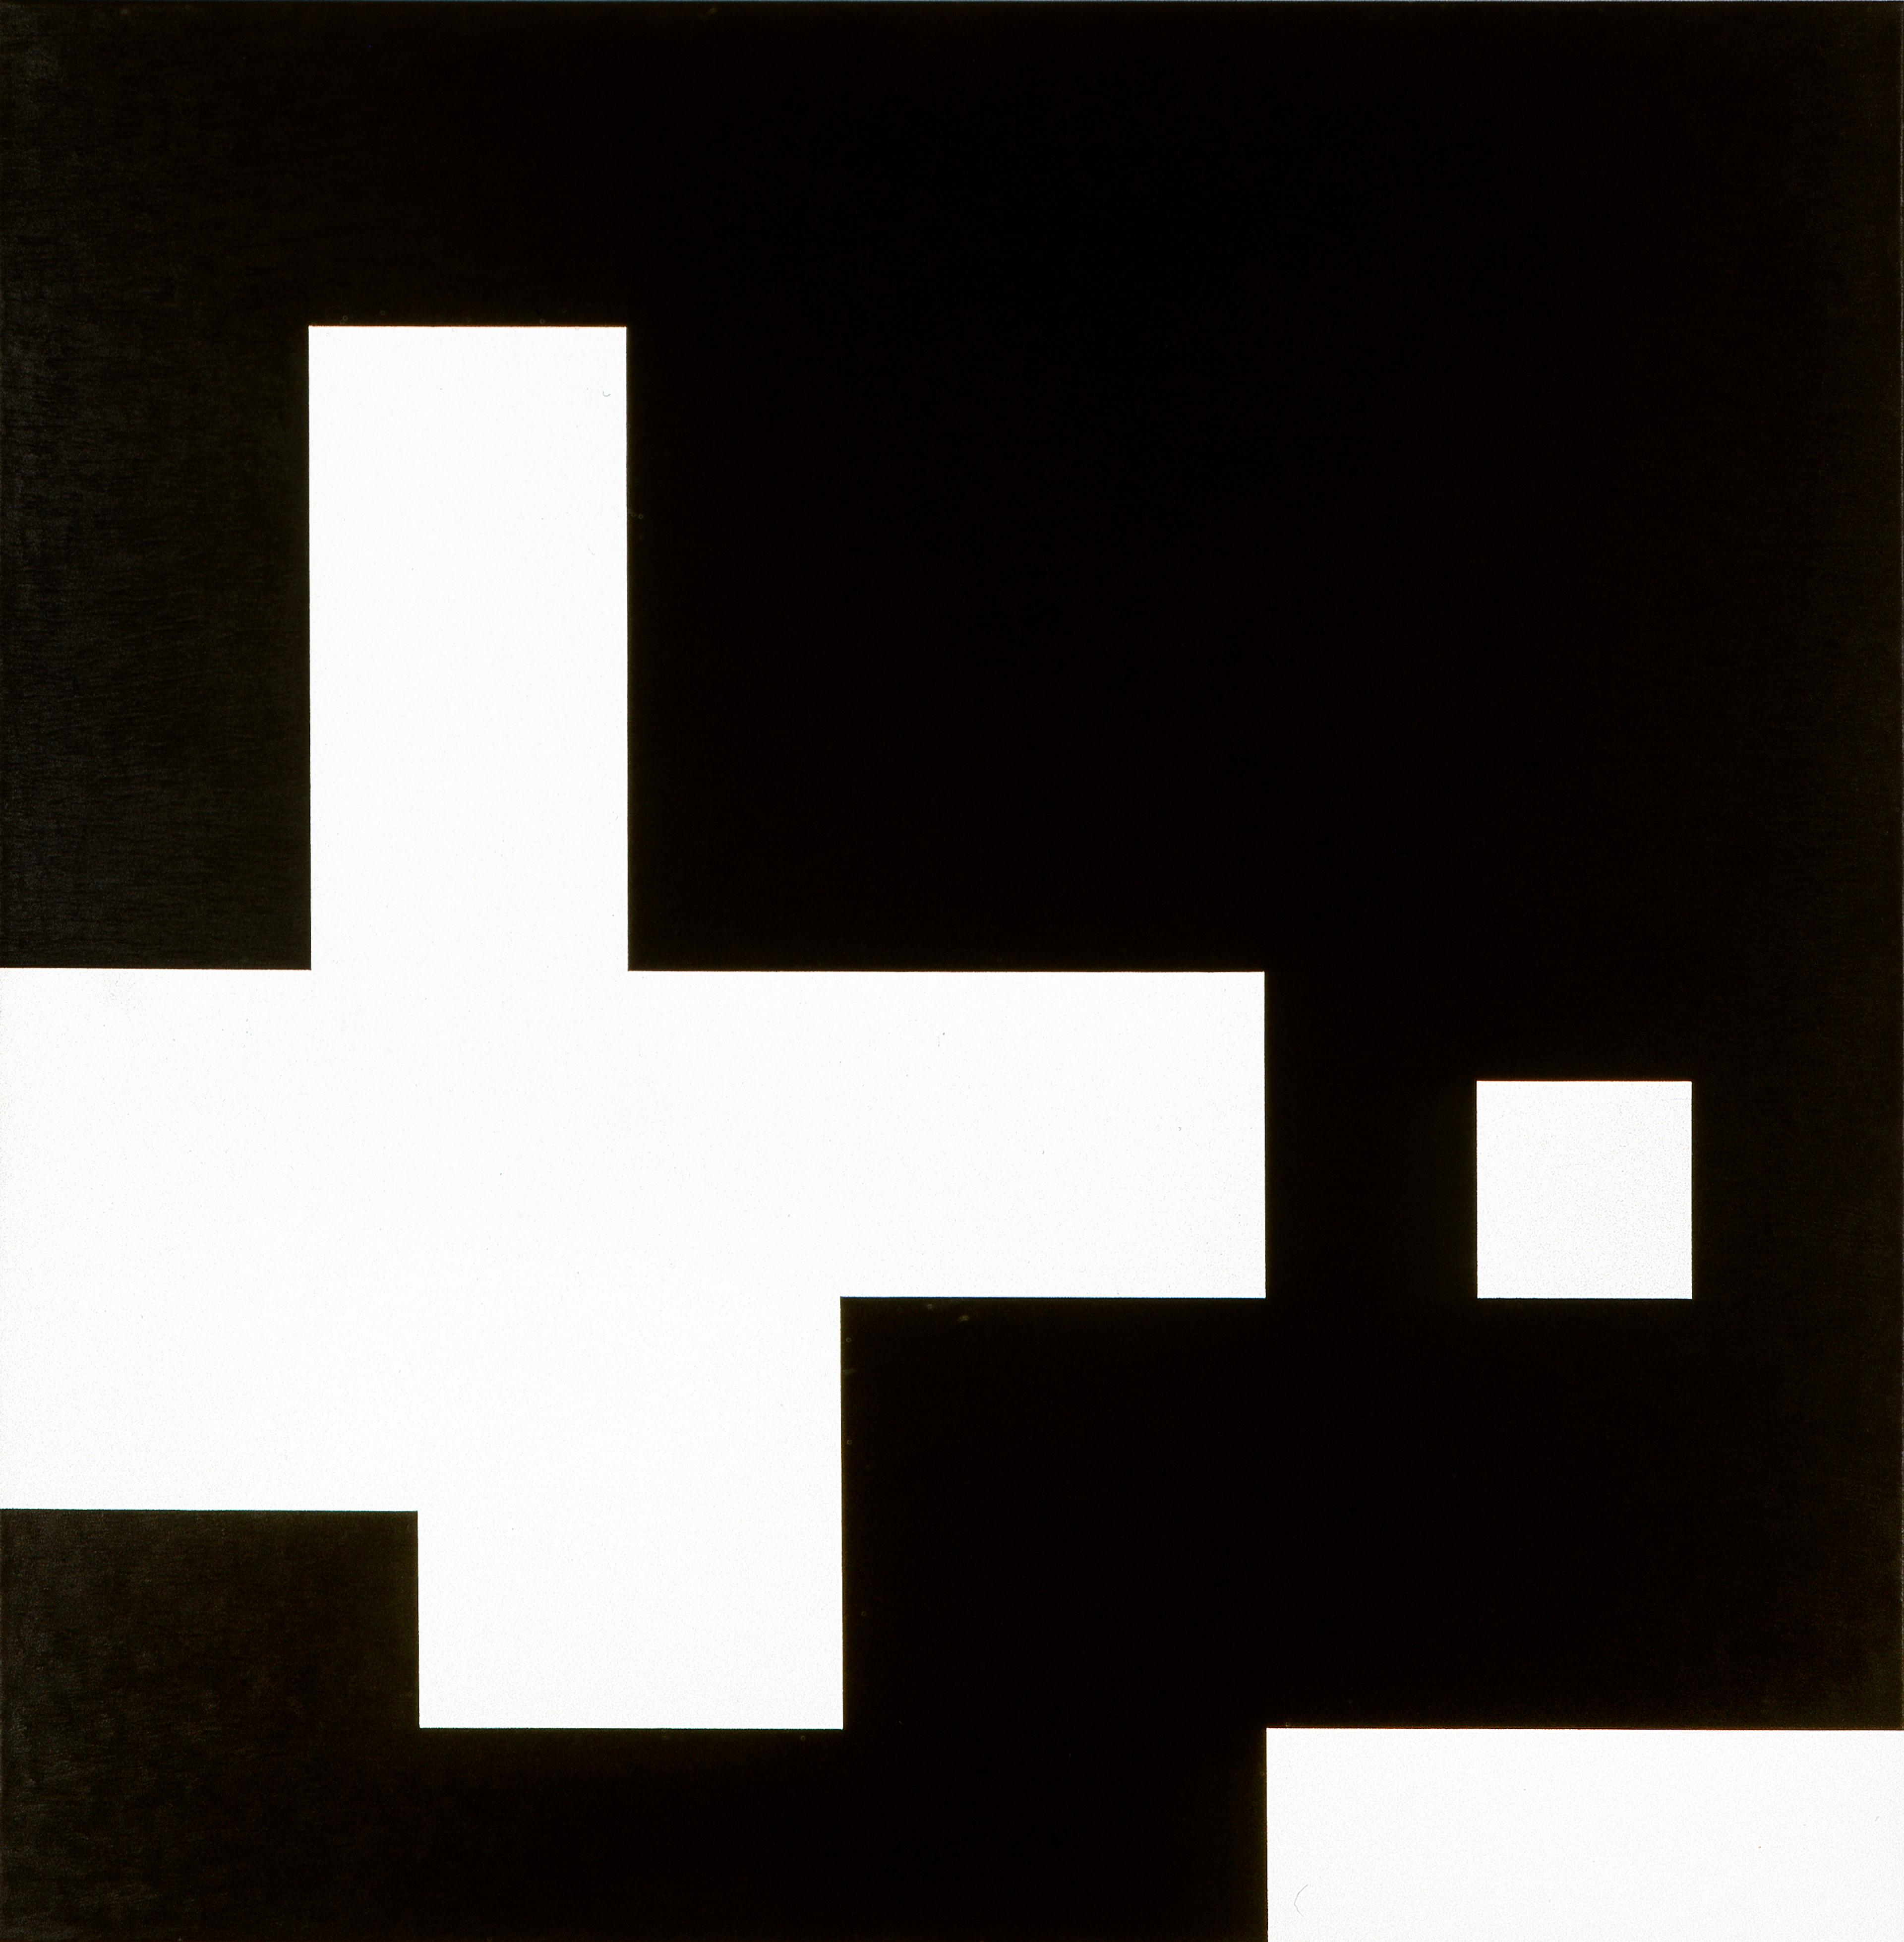 Et abstrakt bilde i firkantede former i sort og hvitt.